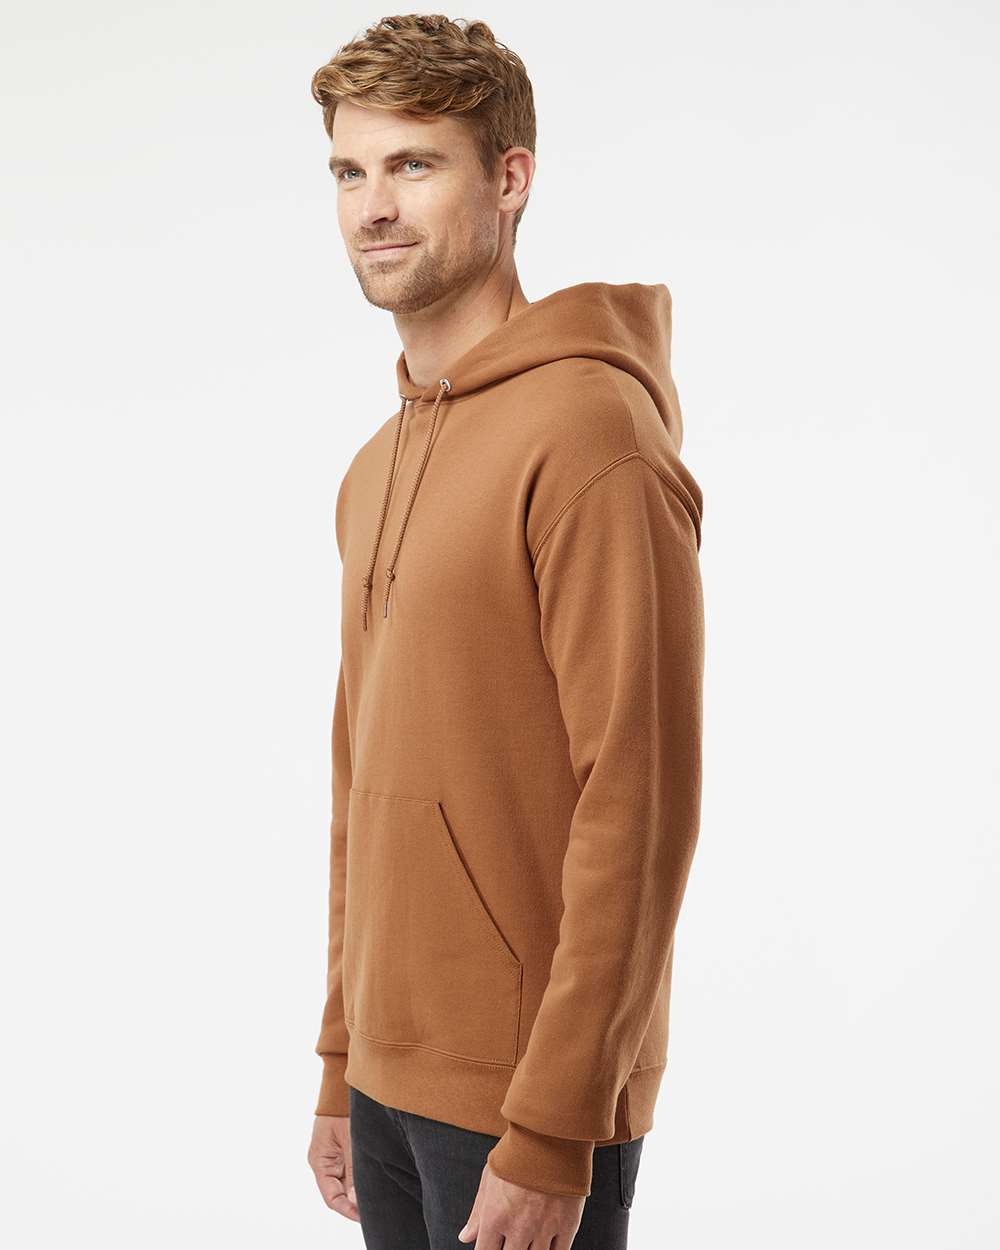 JERZEES - Hooded Sweatshirt - Golden Pecan